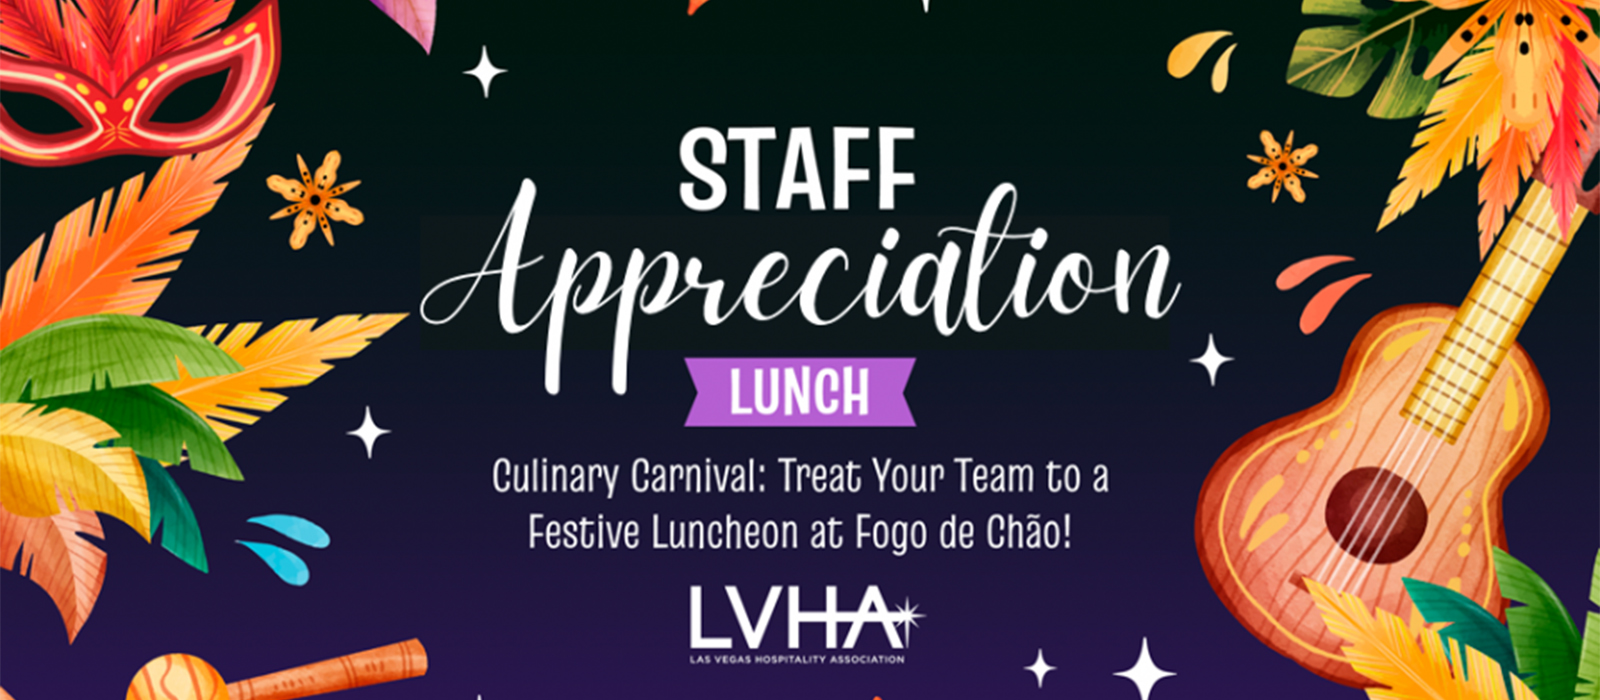 Staff Appreciation Lunch banner